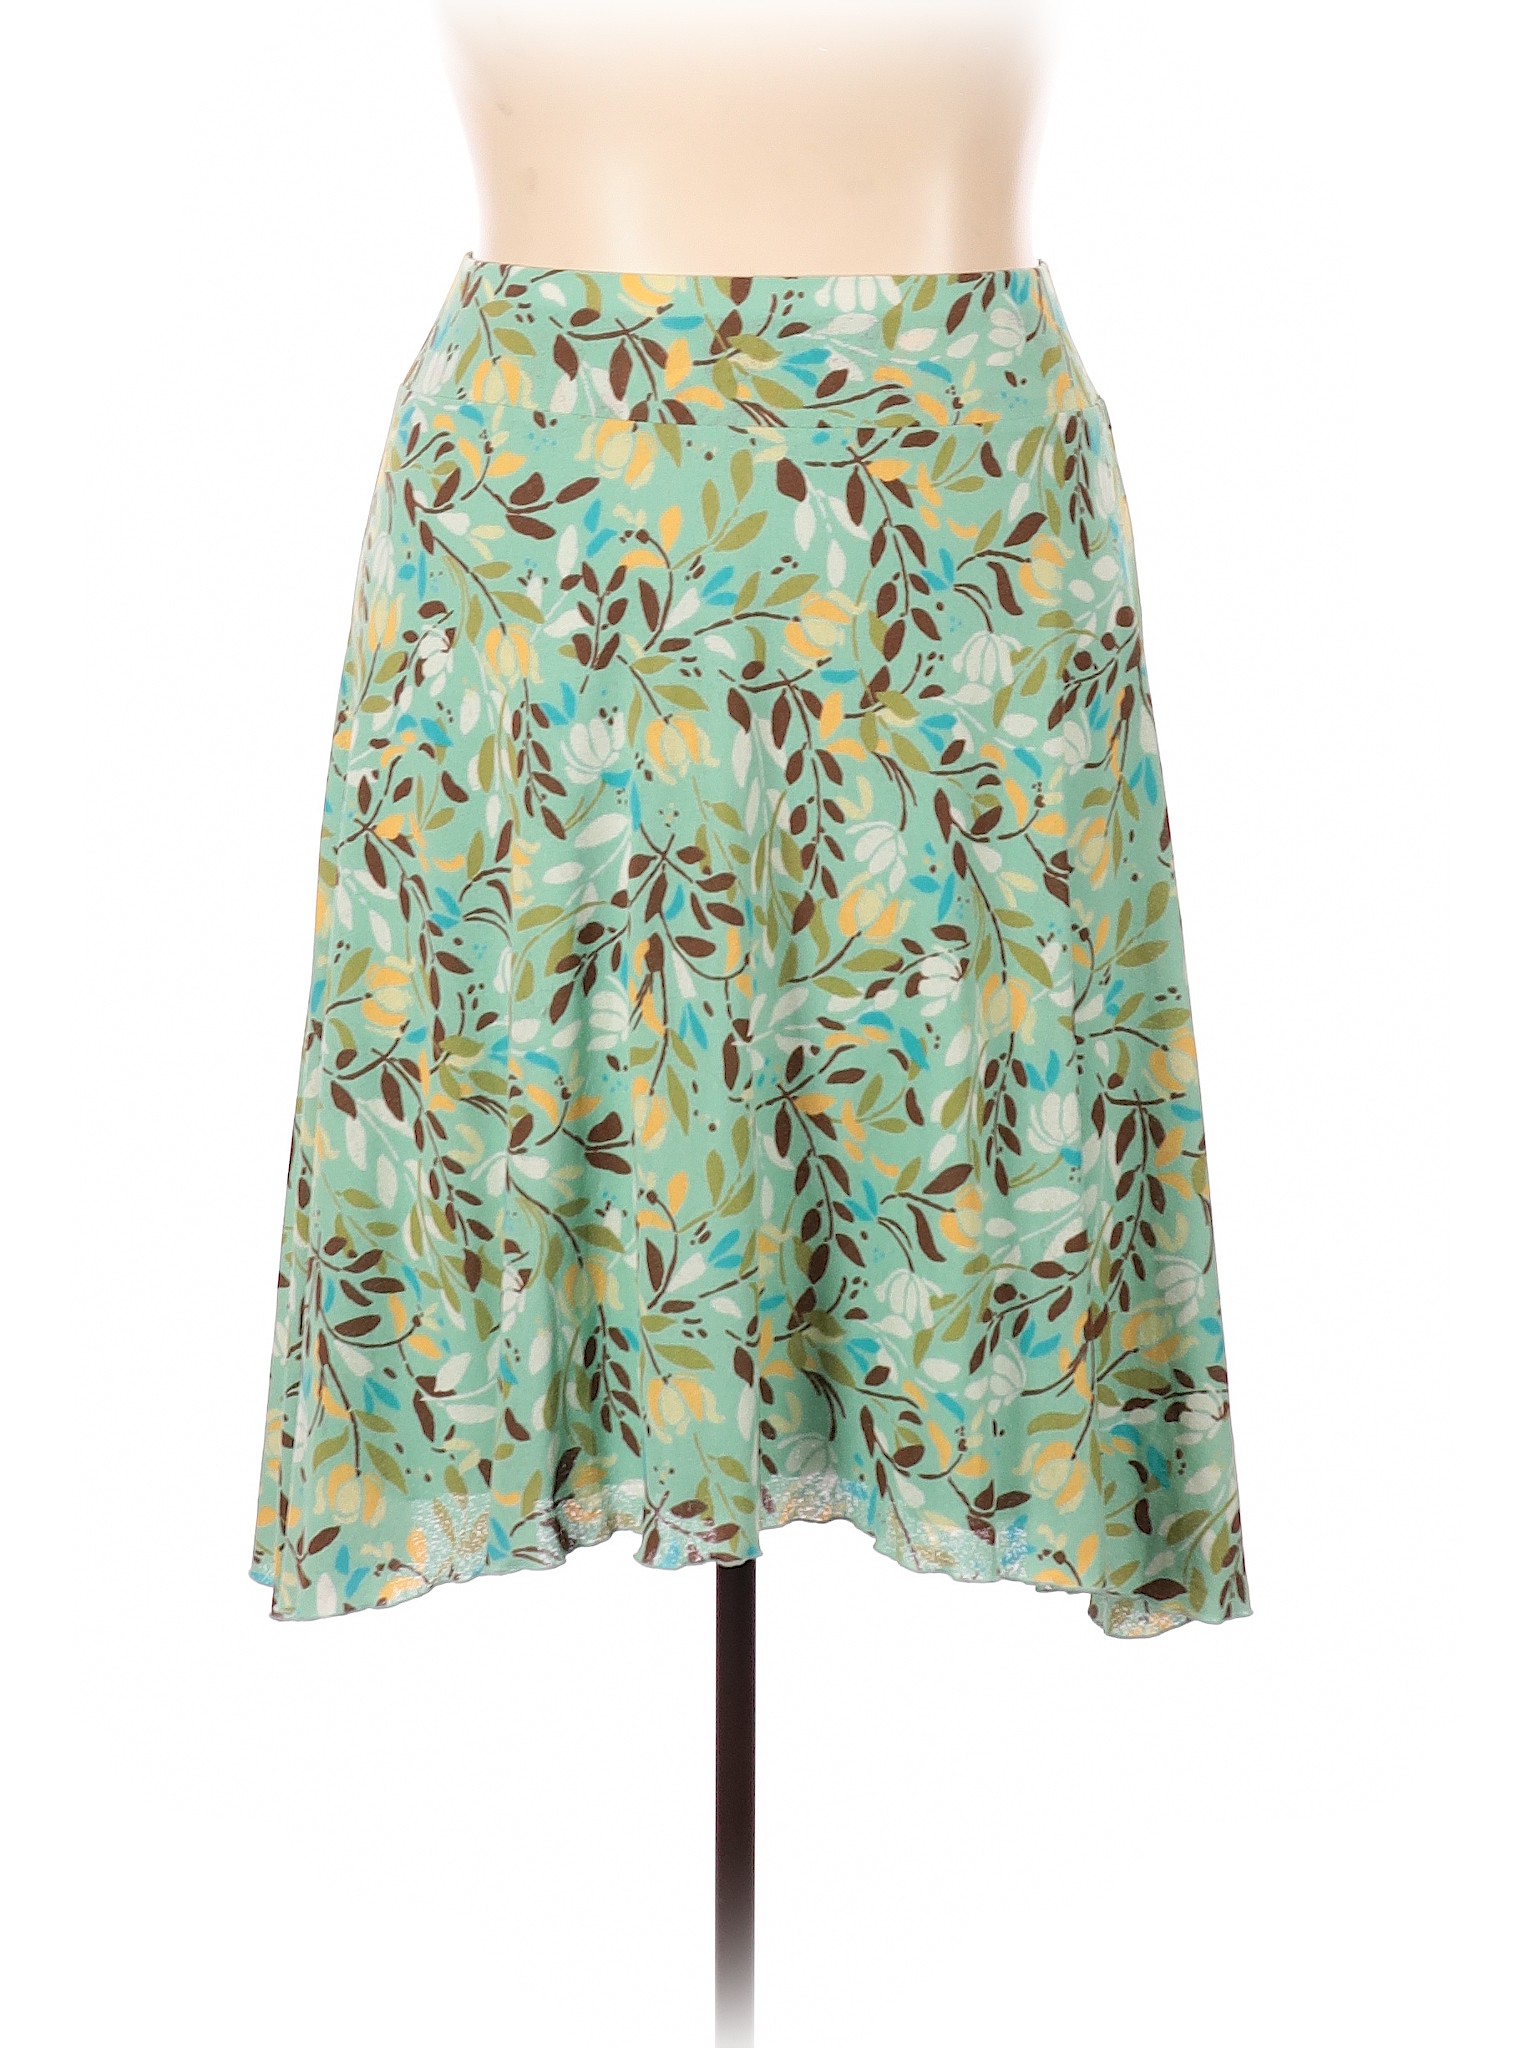 J.Jill Tropical Green Teal Casual Skirt Size XL - 35% off | ThredUp